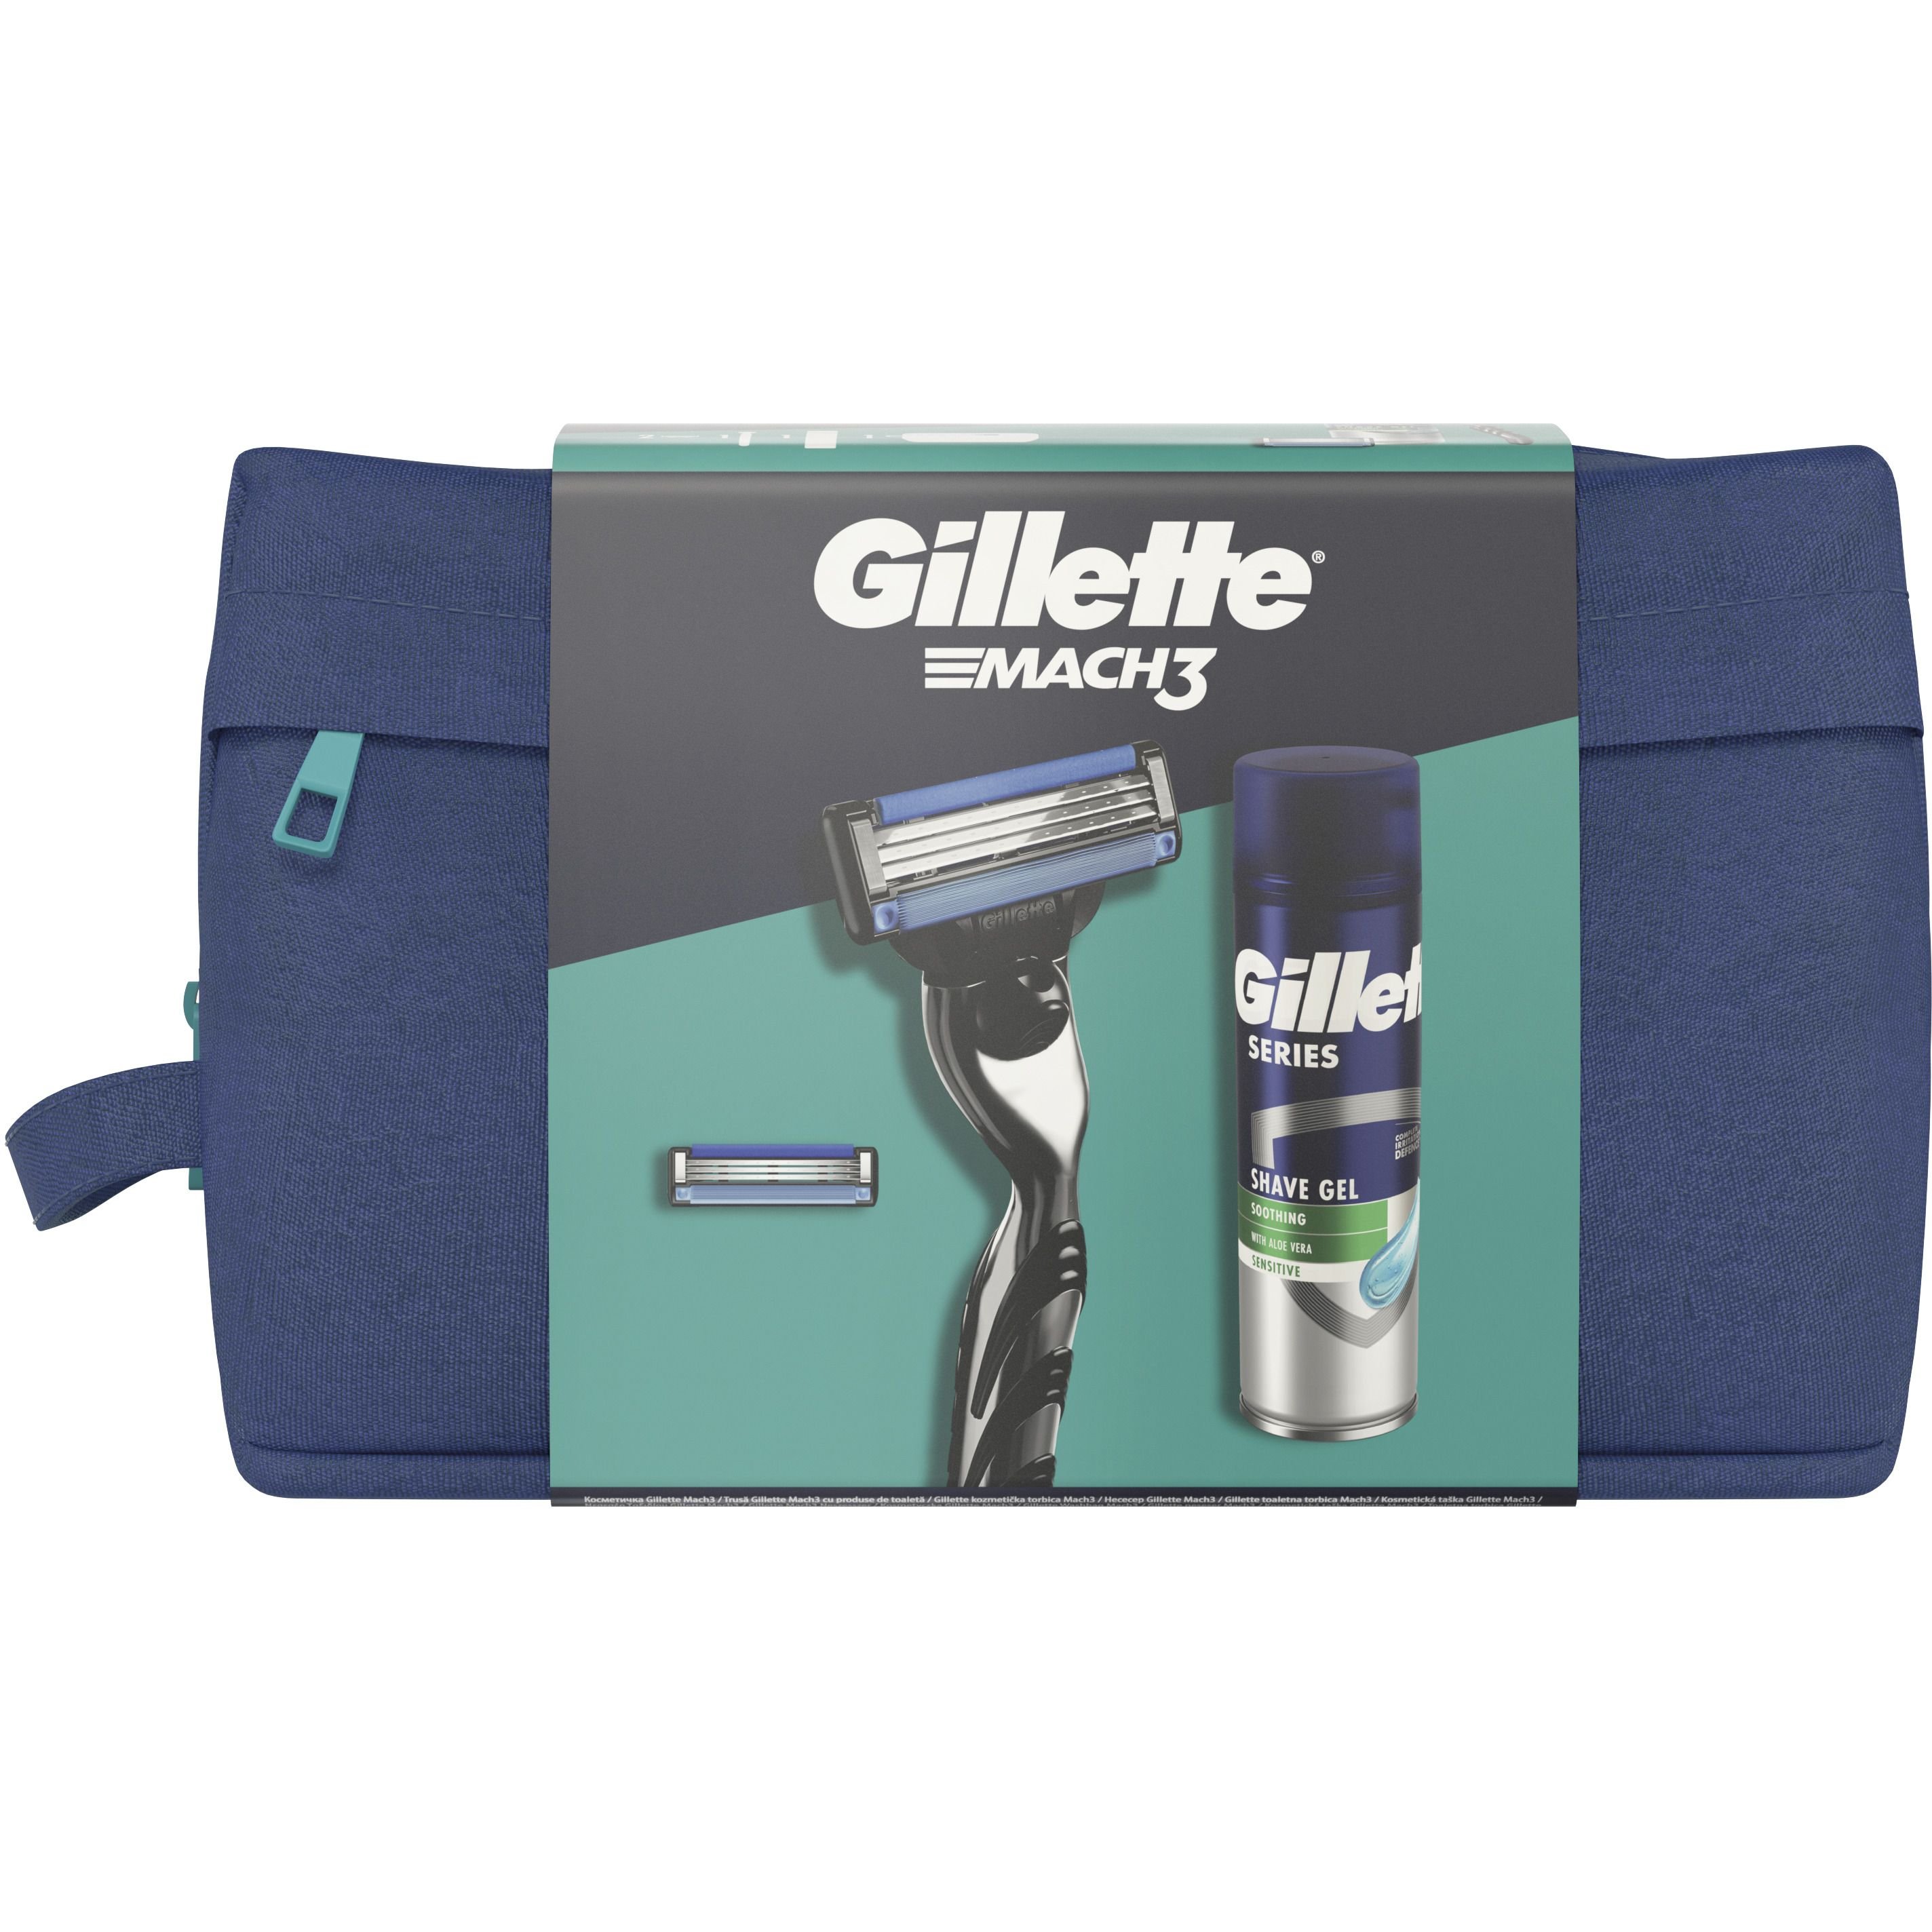 Подарунковий набір для чоловіків Gillette Mach3: бритва + змінні катріджі для гоління 2 шт. + гель для гоління + косметичка - фото 2